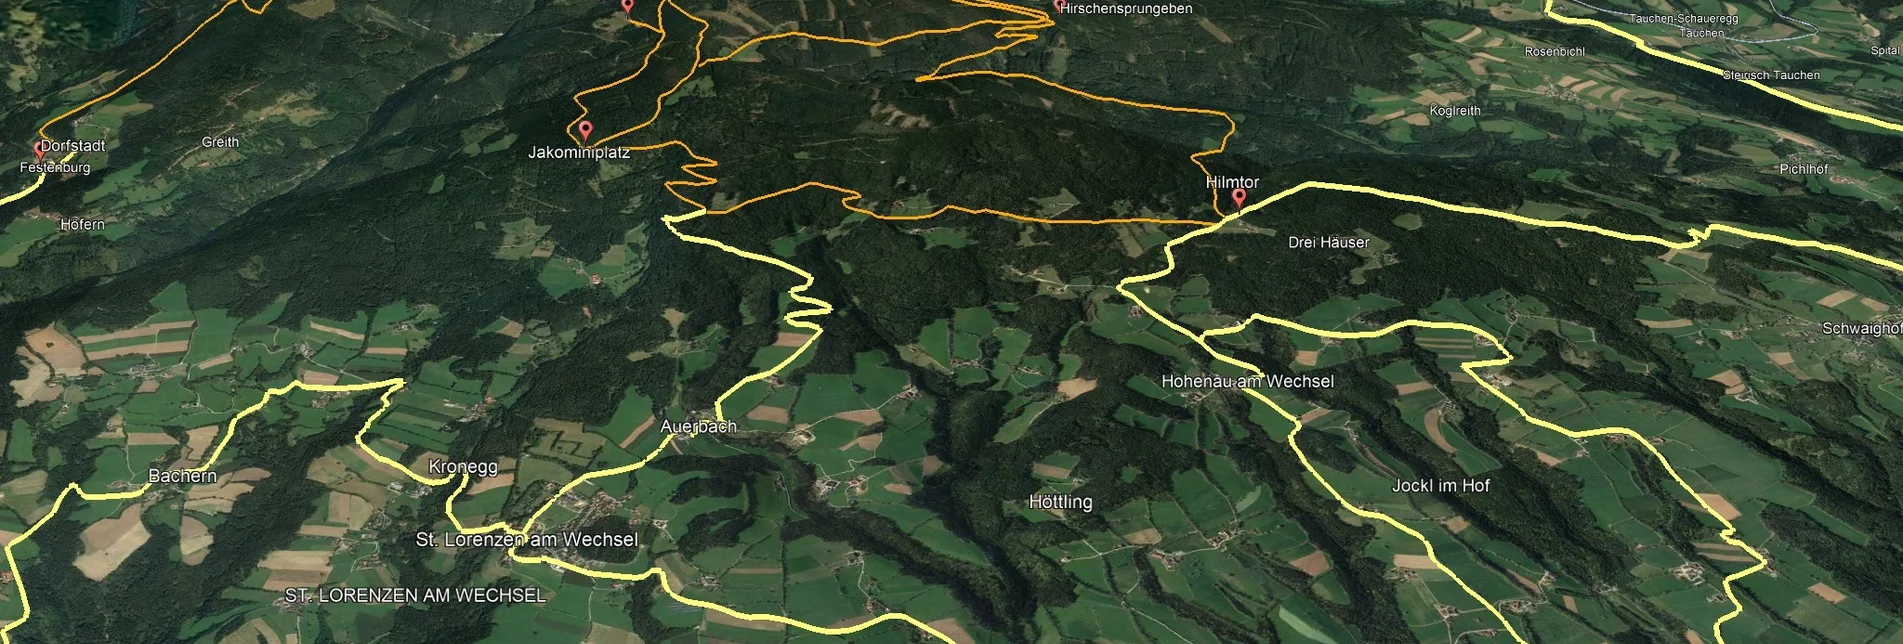 Mountainbike VORSCHAU Steirische Wexl Trails - Zubringer Lafnitz über Rohrbach zum Hilmtor - Touren-Impression #1 | © Verein Tourismusentwicklung Steirischer Wechsel